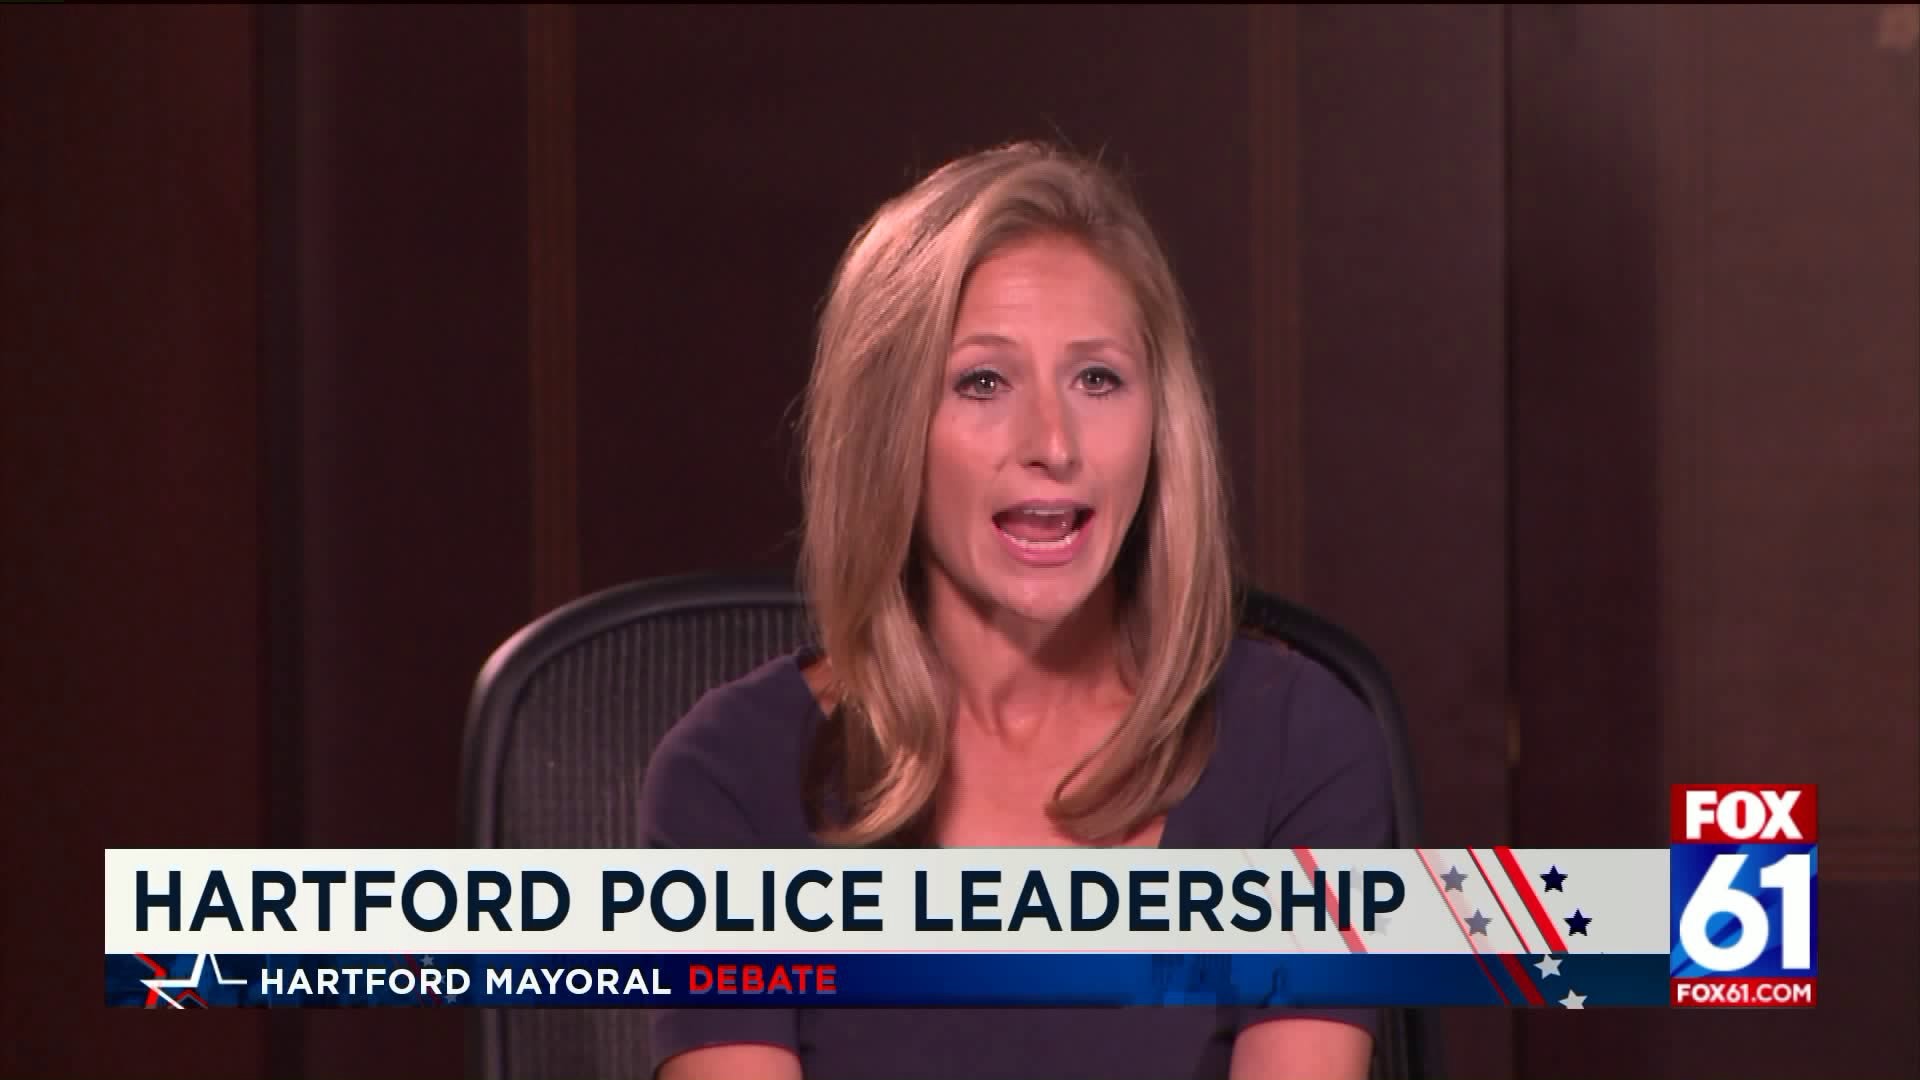 Hartford Mayoral Debate: Police Leadership